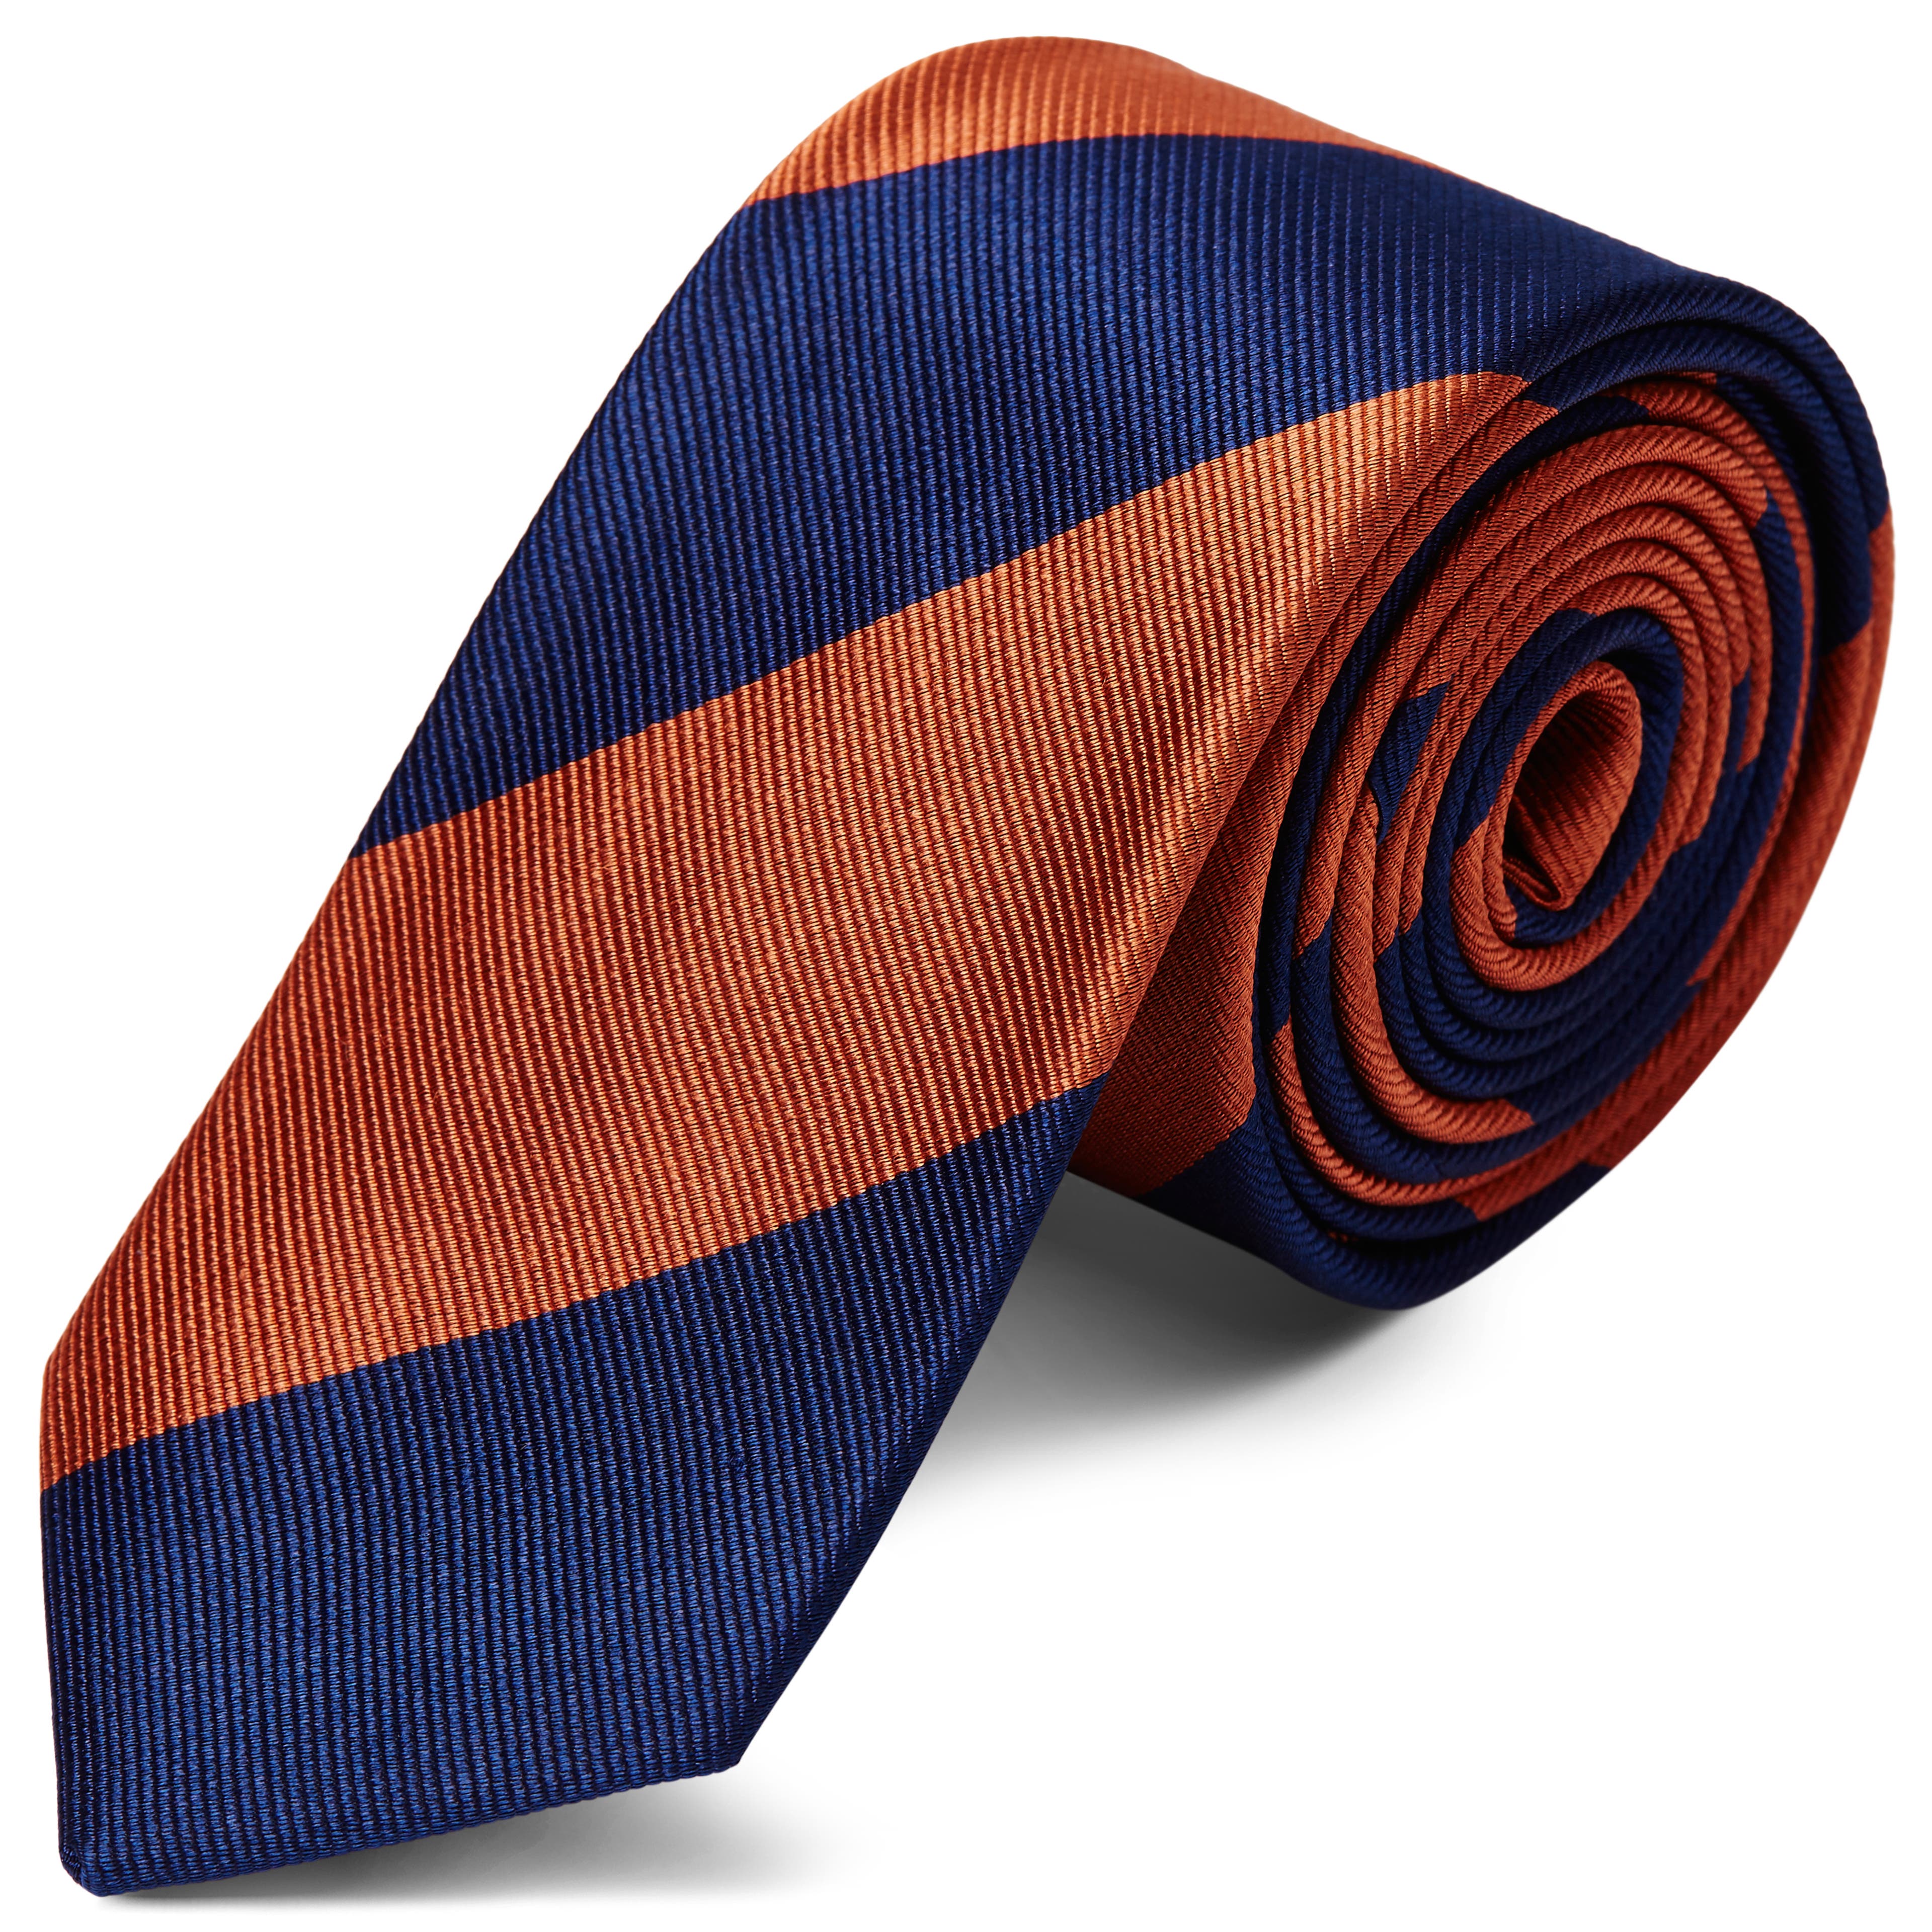 Cravatta blu navy e arancio in seta da 6 cm con motivo a righe